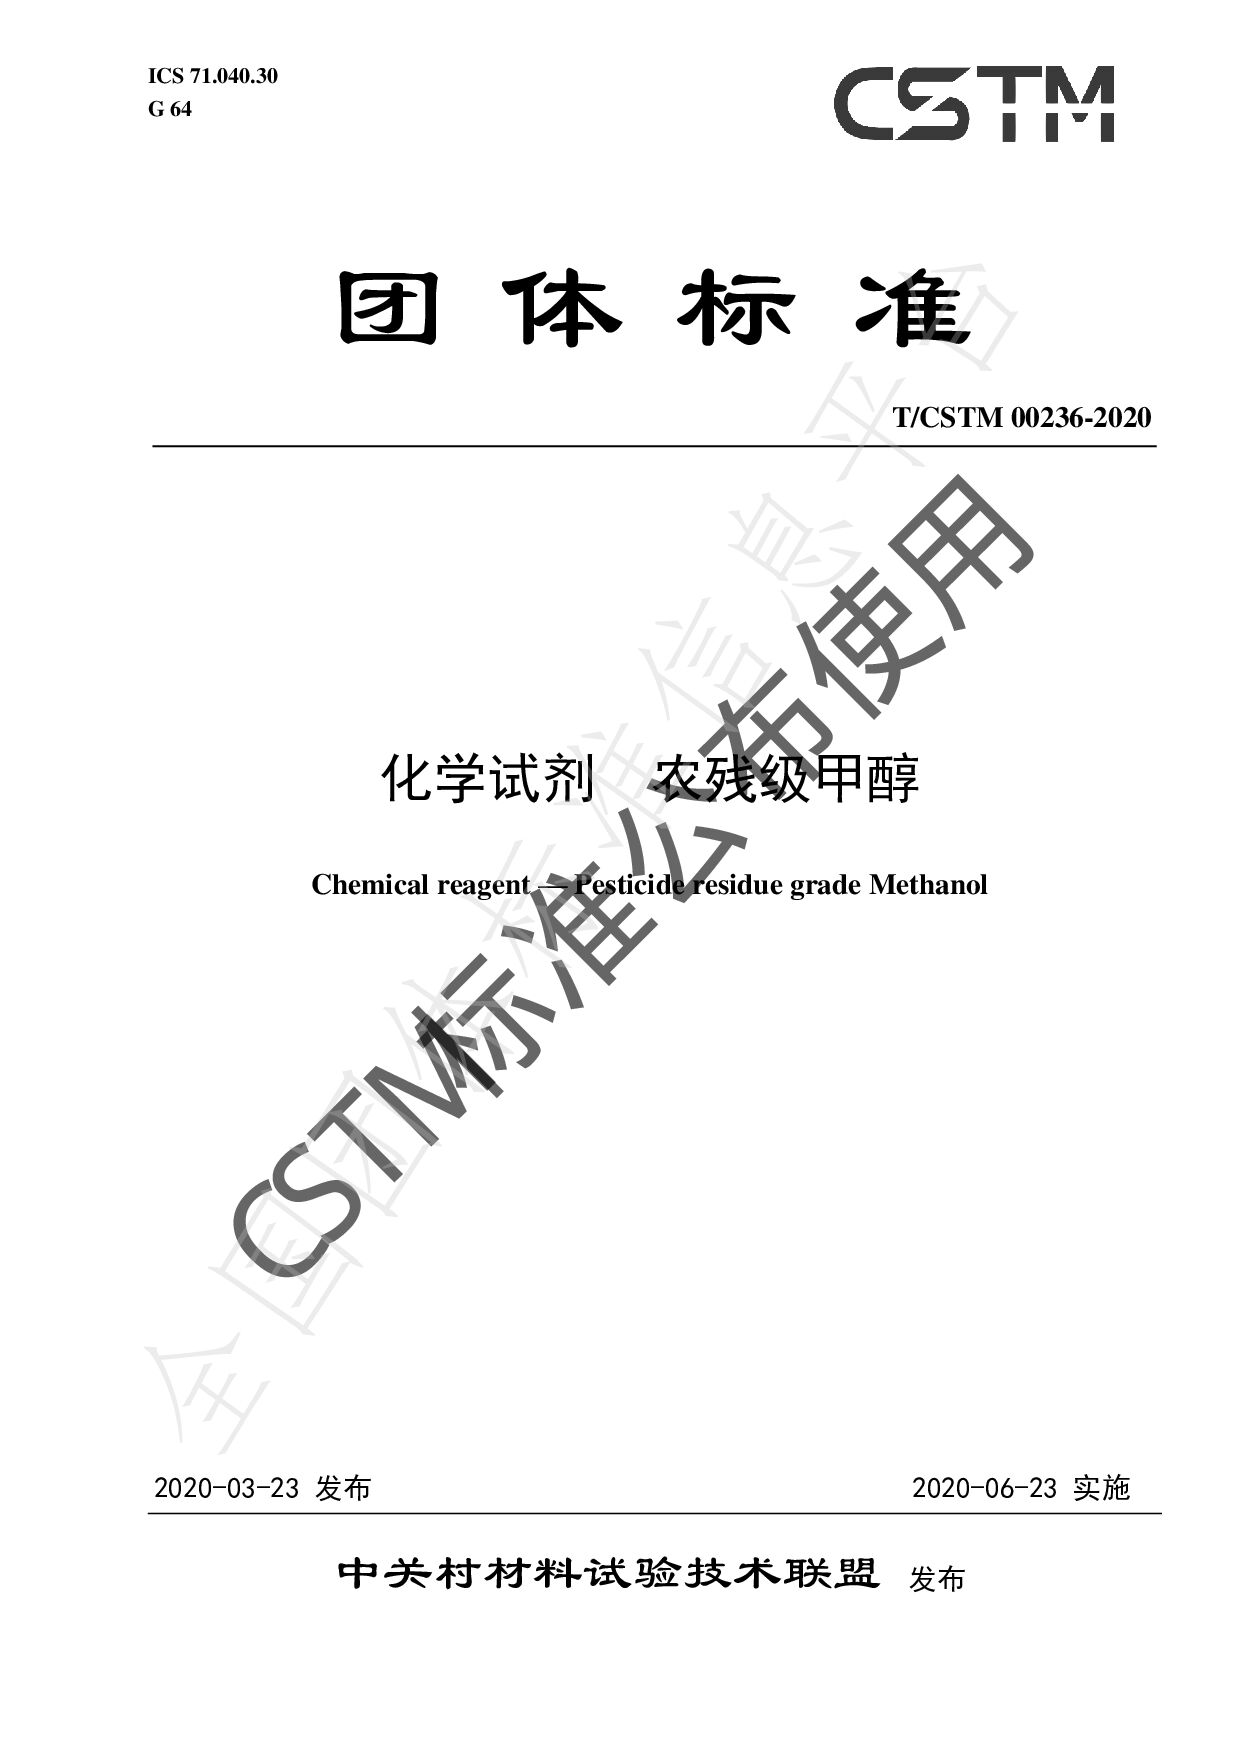 T/CSTM 00236-2020封面图